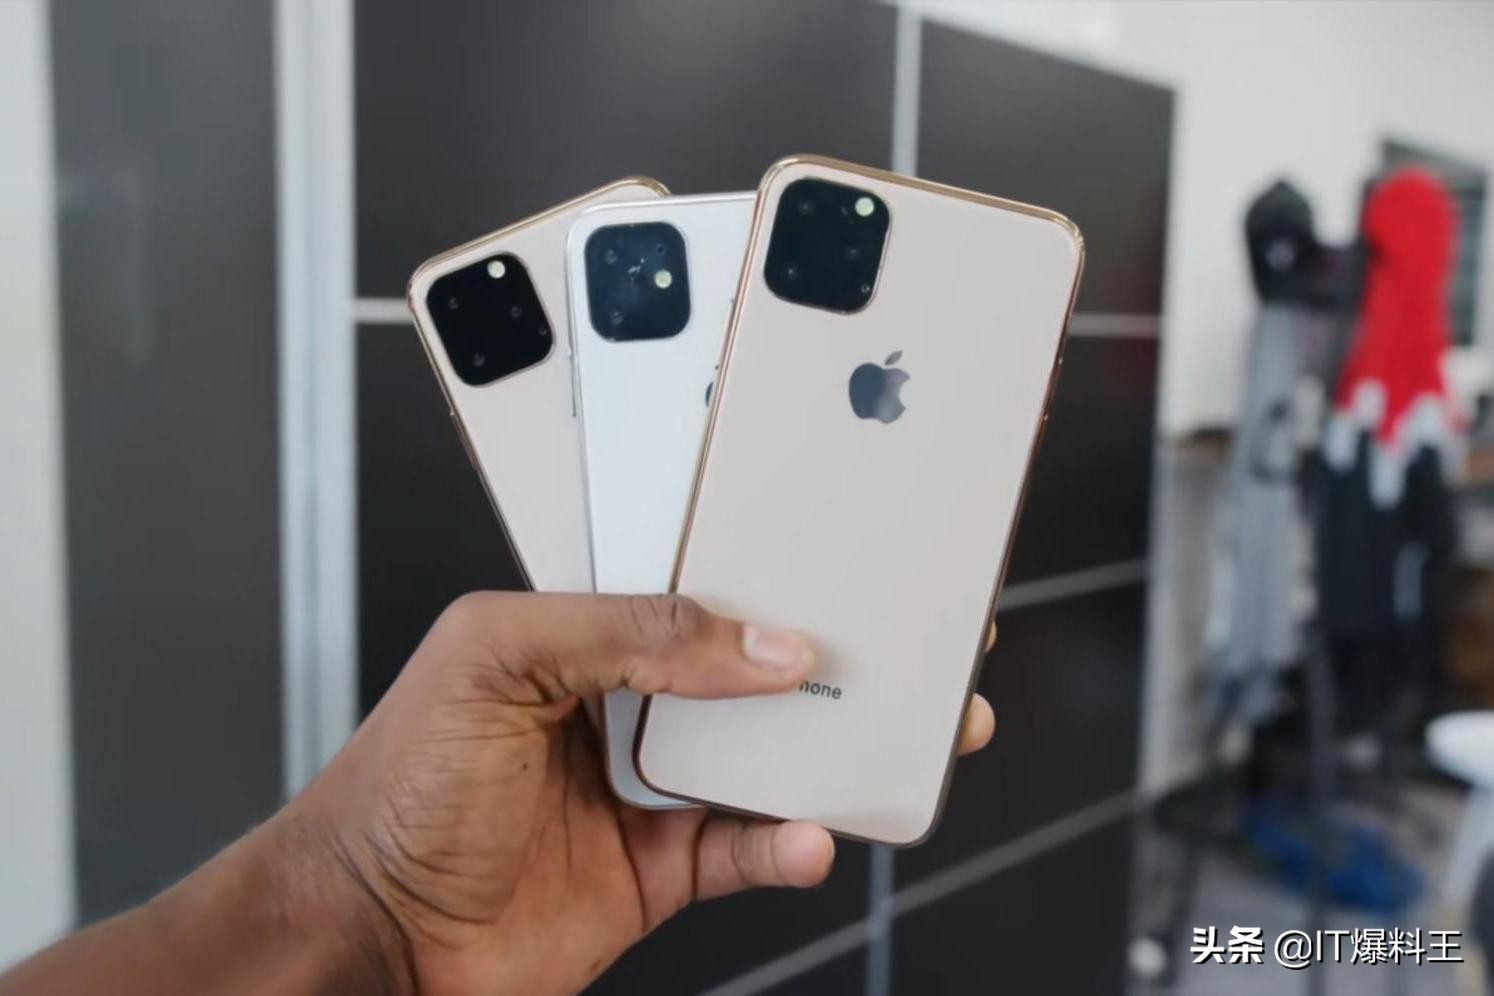 518一元发展、Max版7603元：2019三款新iPhone市场价全方位曝出